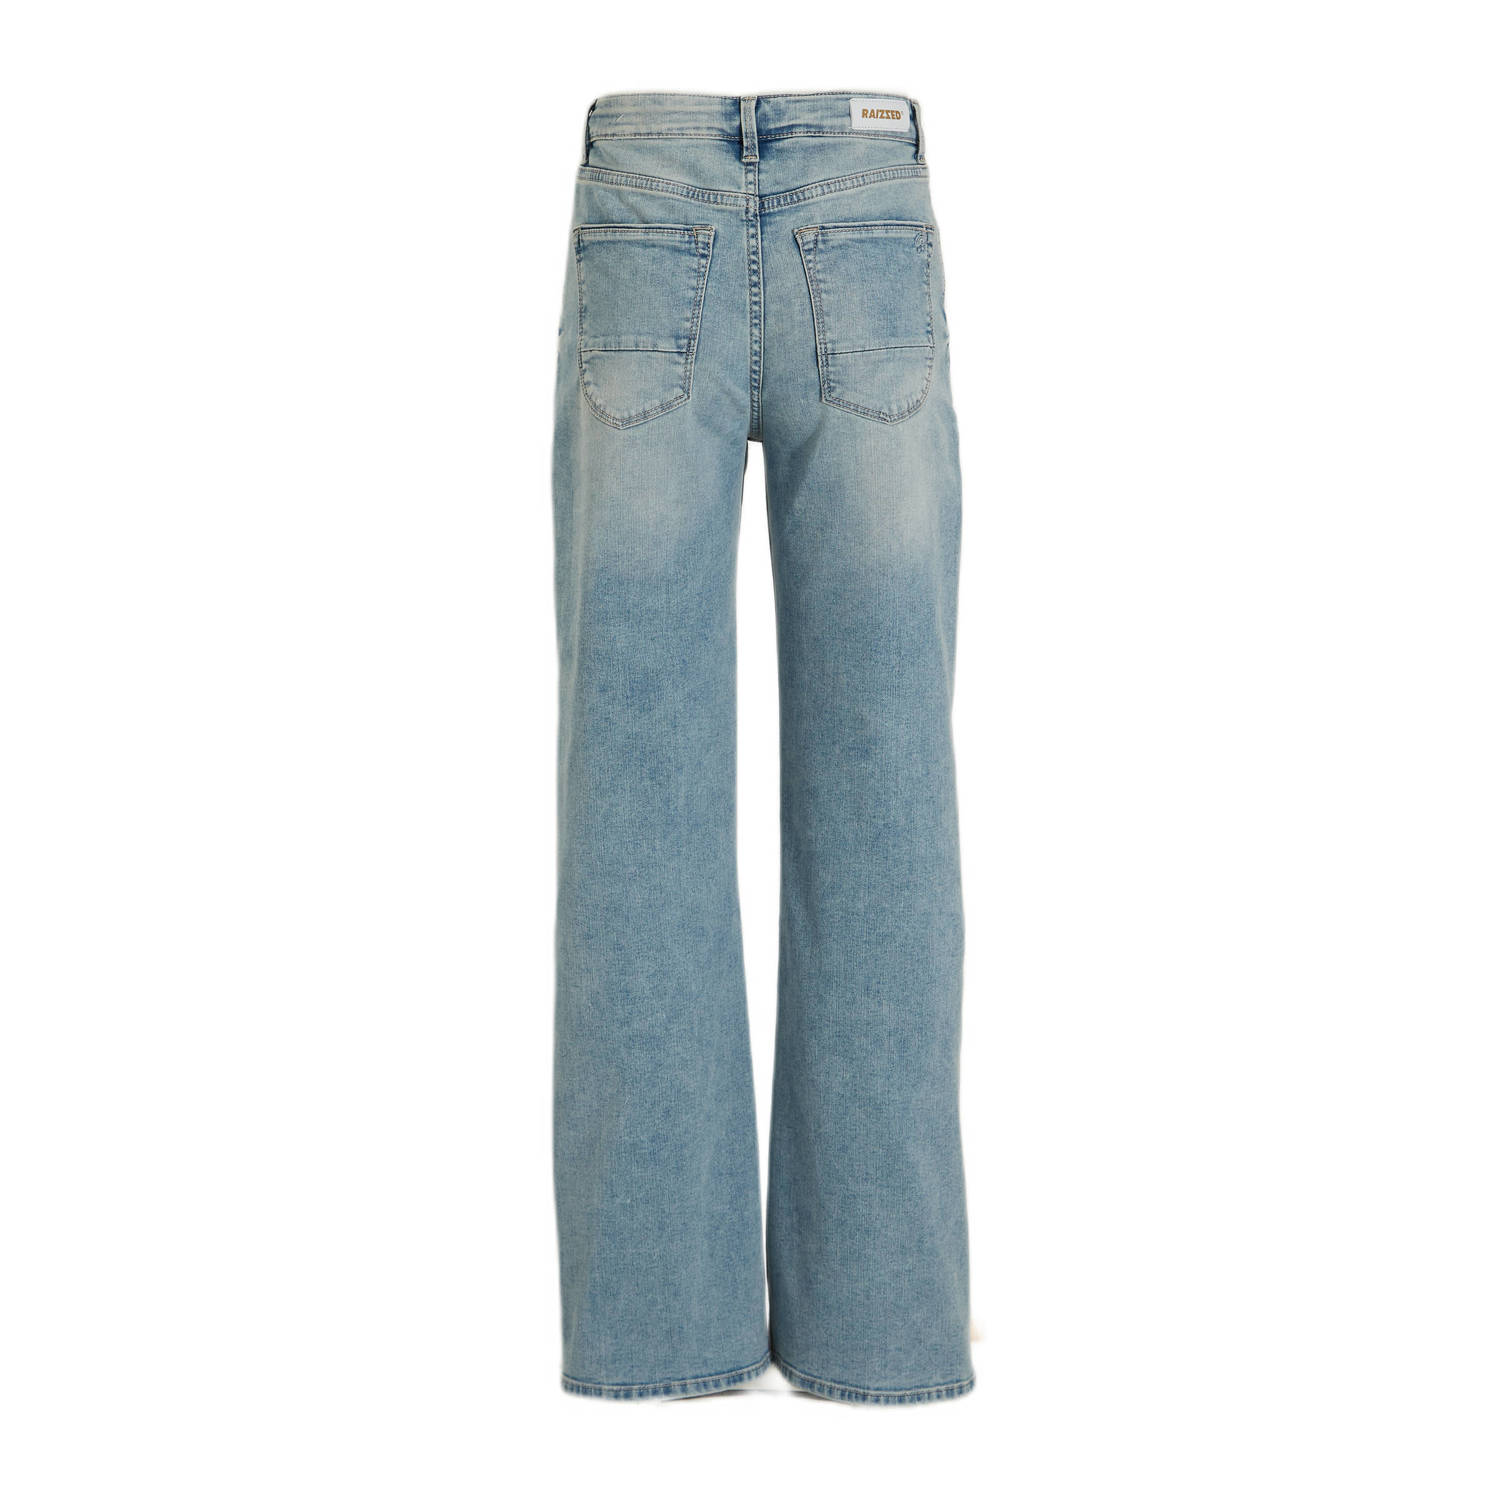 Raizzed wide leg jeans vintage blue denim